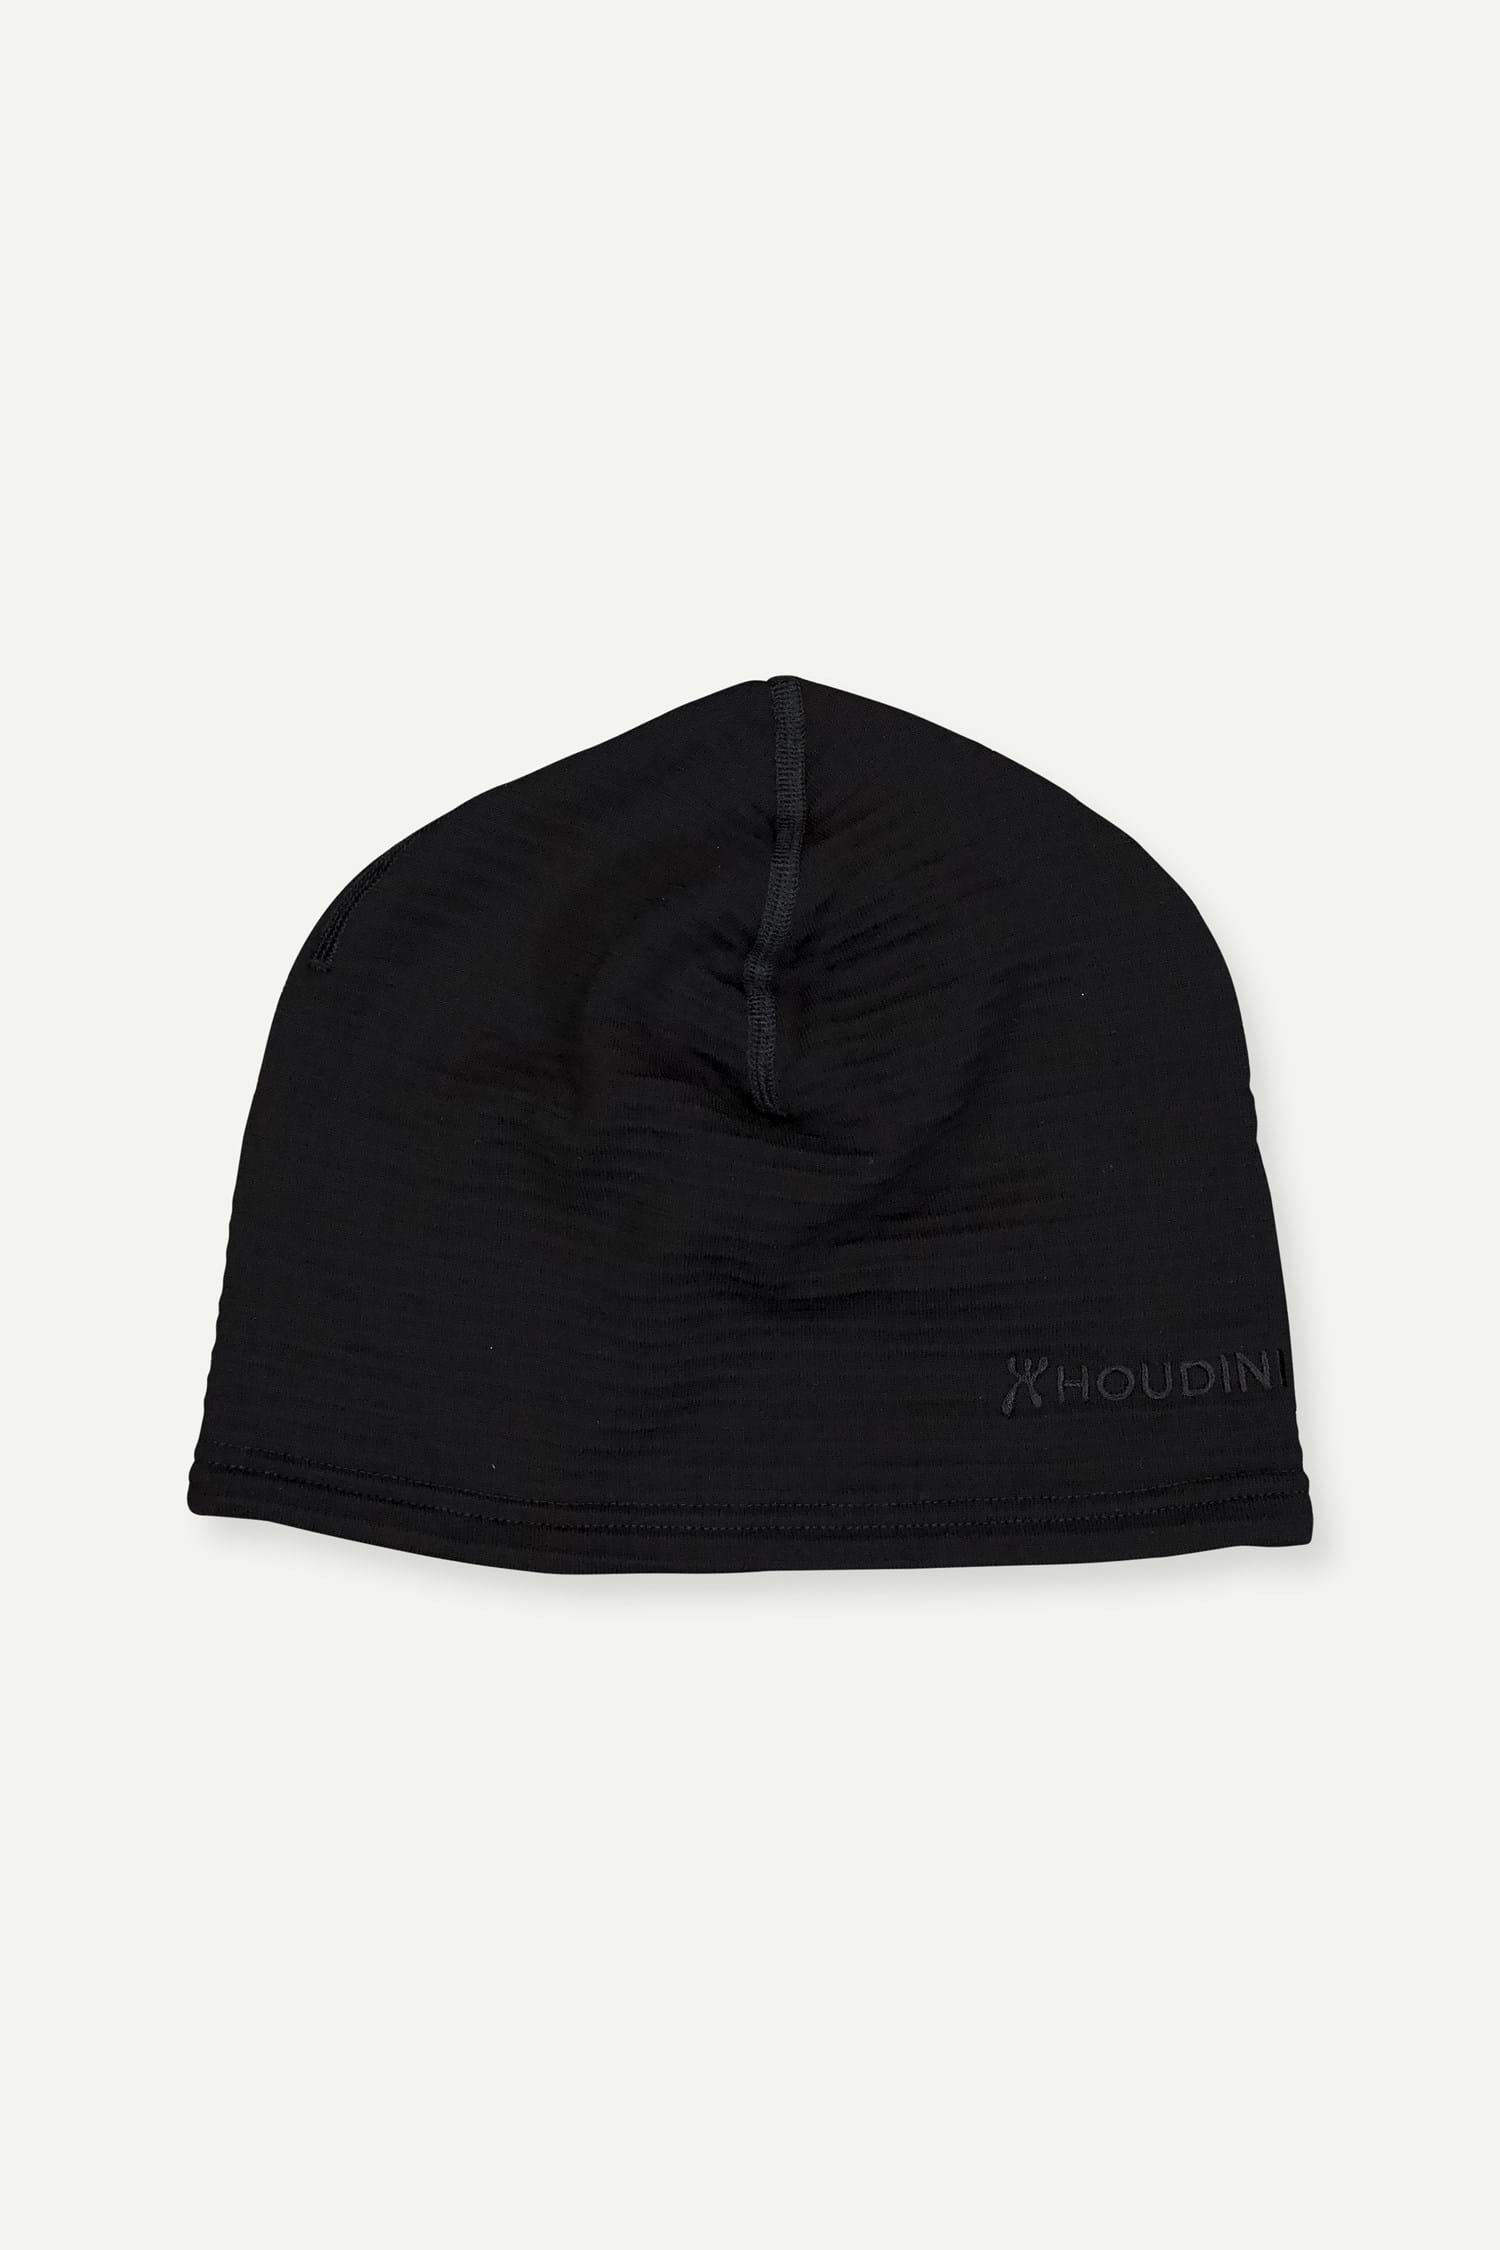 Produktfoto för Houdini Desoli Thermal Hat, True Black, L